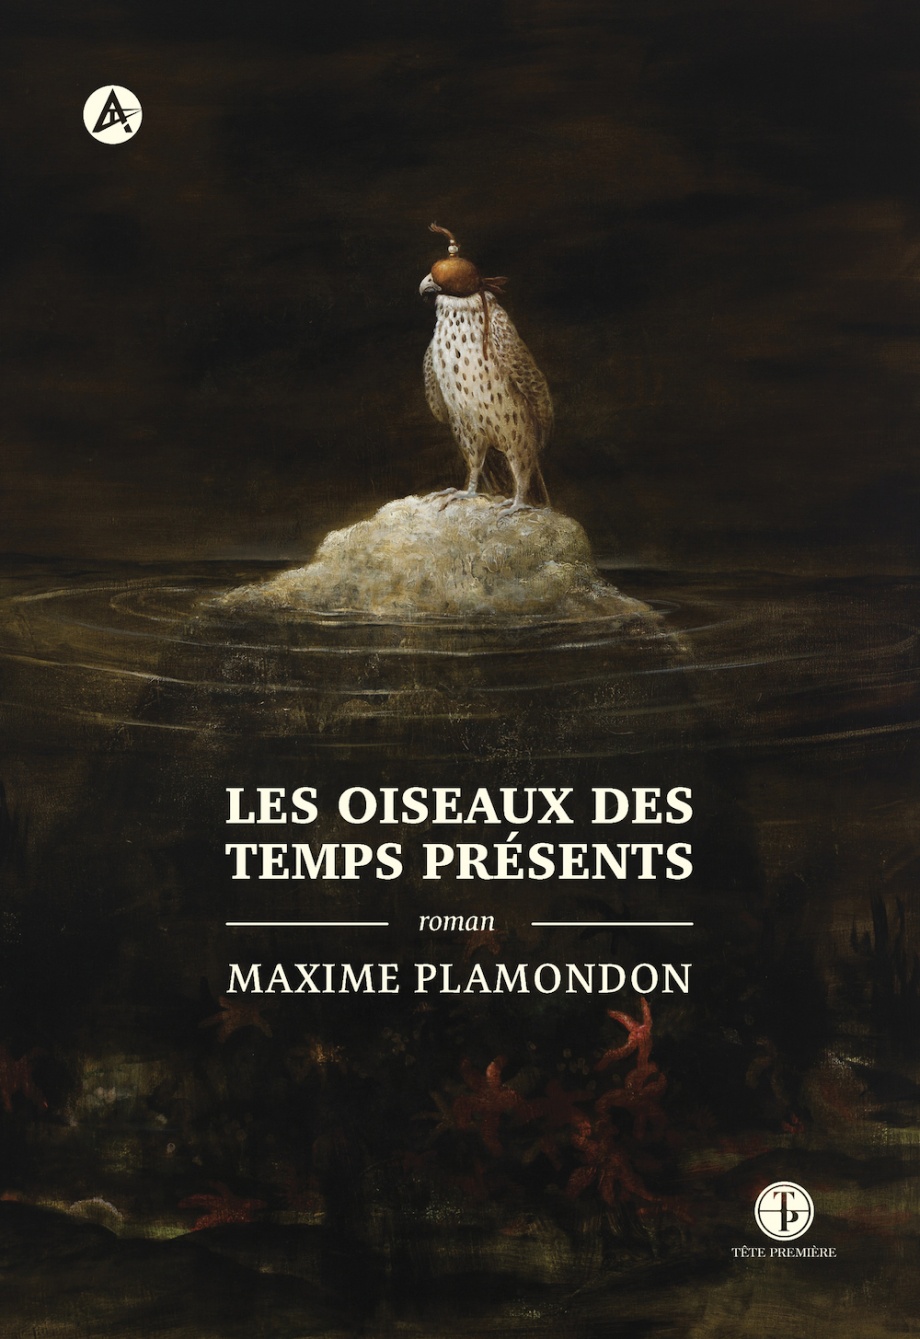 Les oiseaux des temps présents de Maxime Plamondon